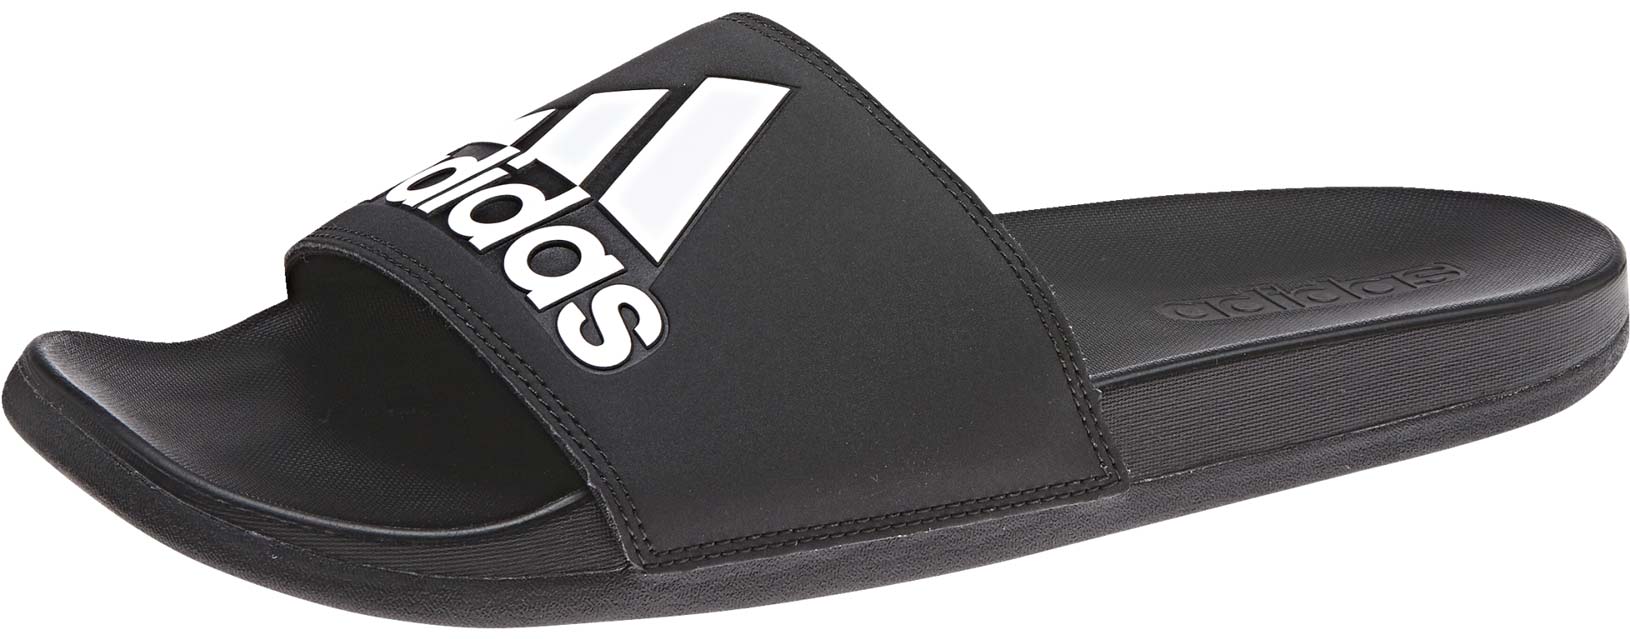 Men’s slippers